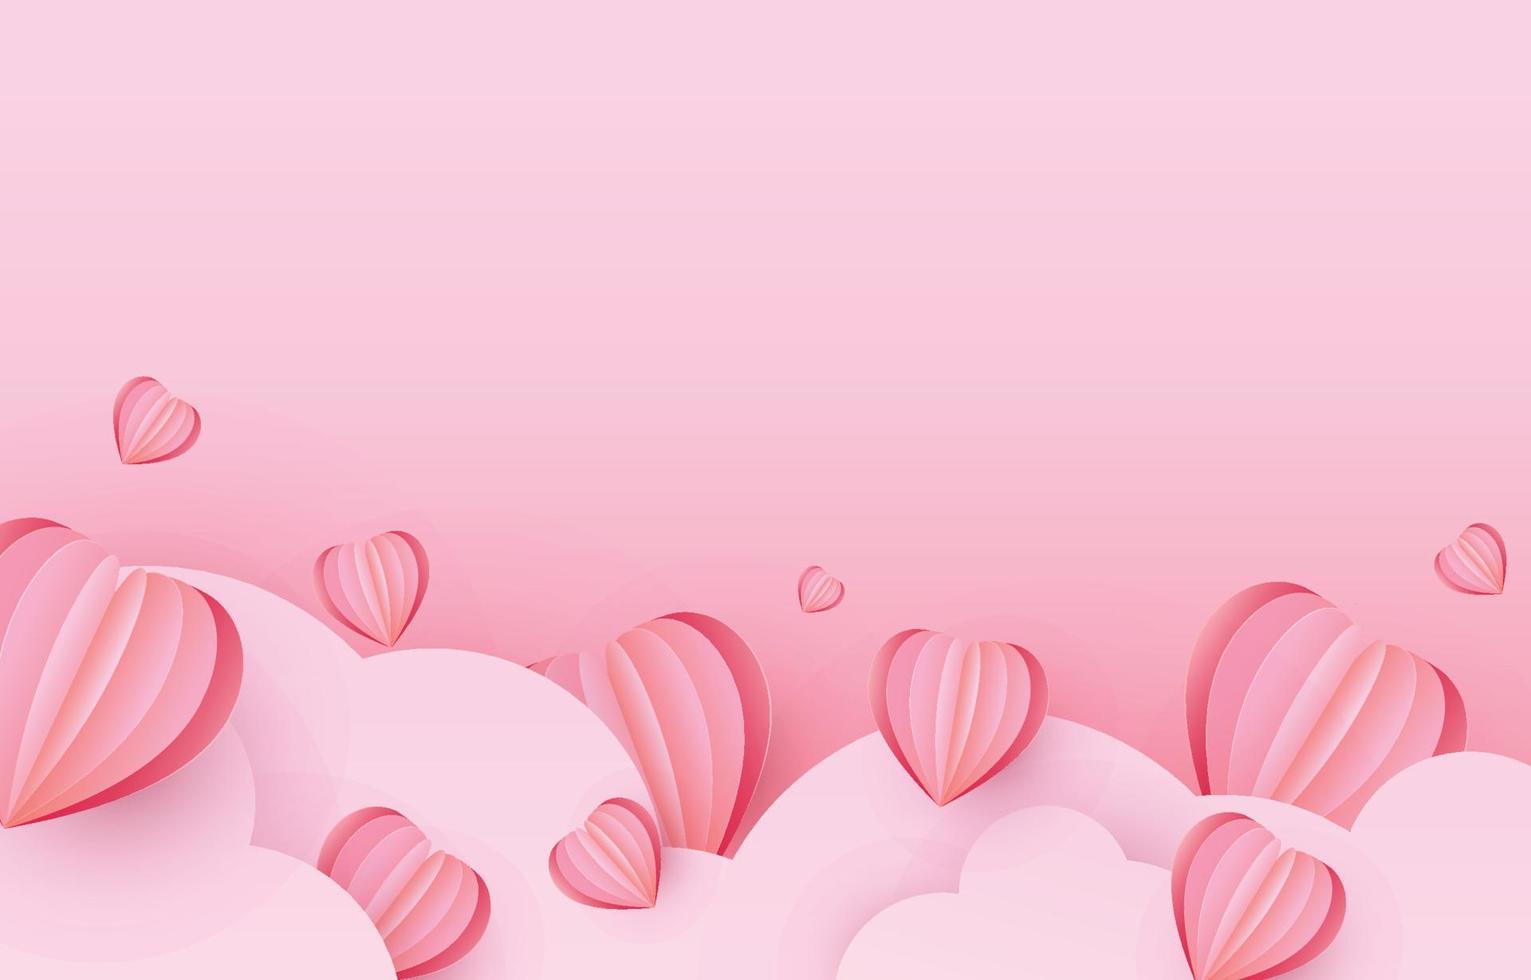 minimo carta contento San Valentino giorno. carta tagliata cuore elementi decorare saluto carte nel dolce colori. vettore illustrazione gratuito spazio su piazza carta telaio.